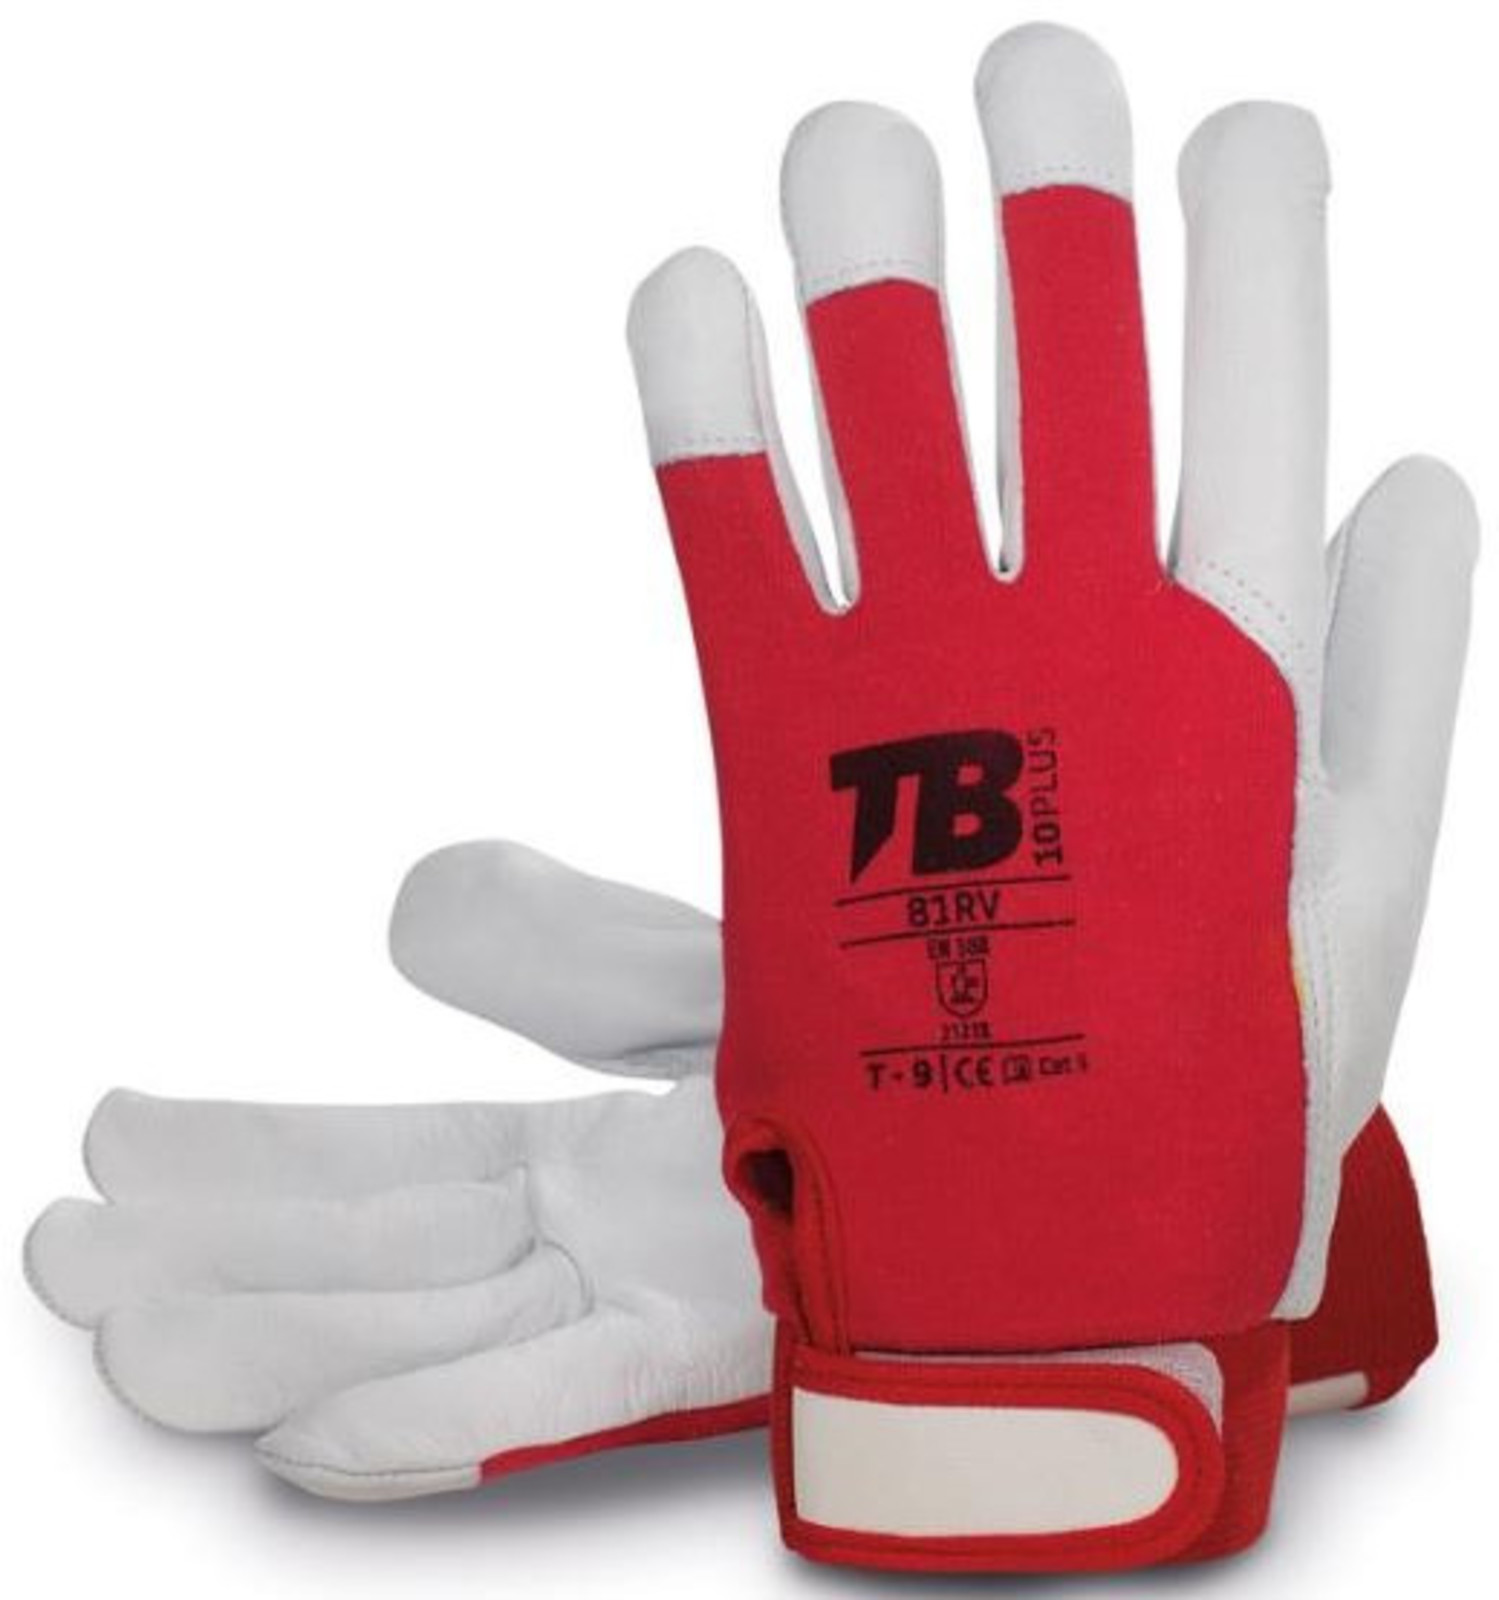 Pracovné rukavice TB 81RV kombinované - veľkosť: 8/M